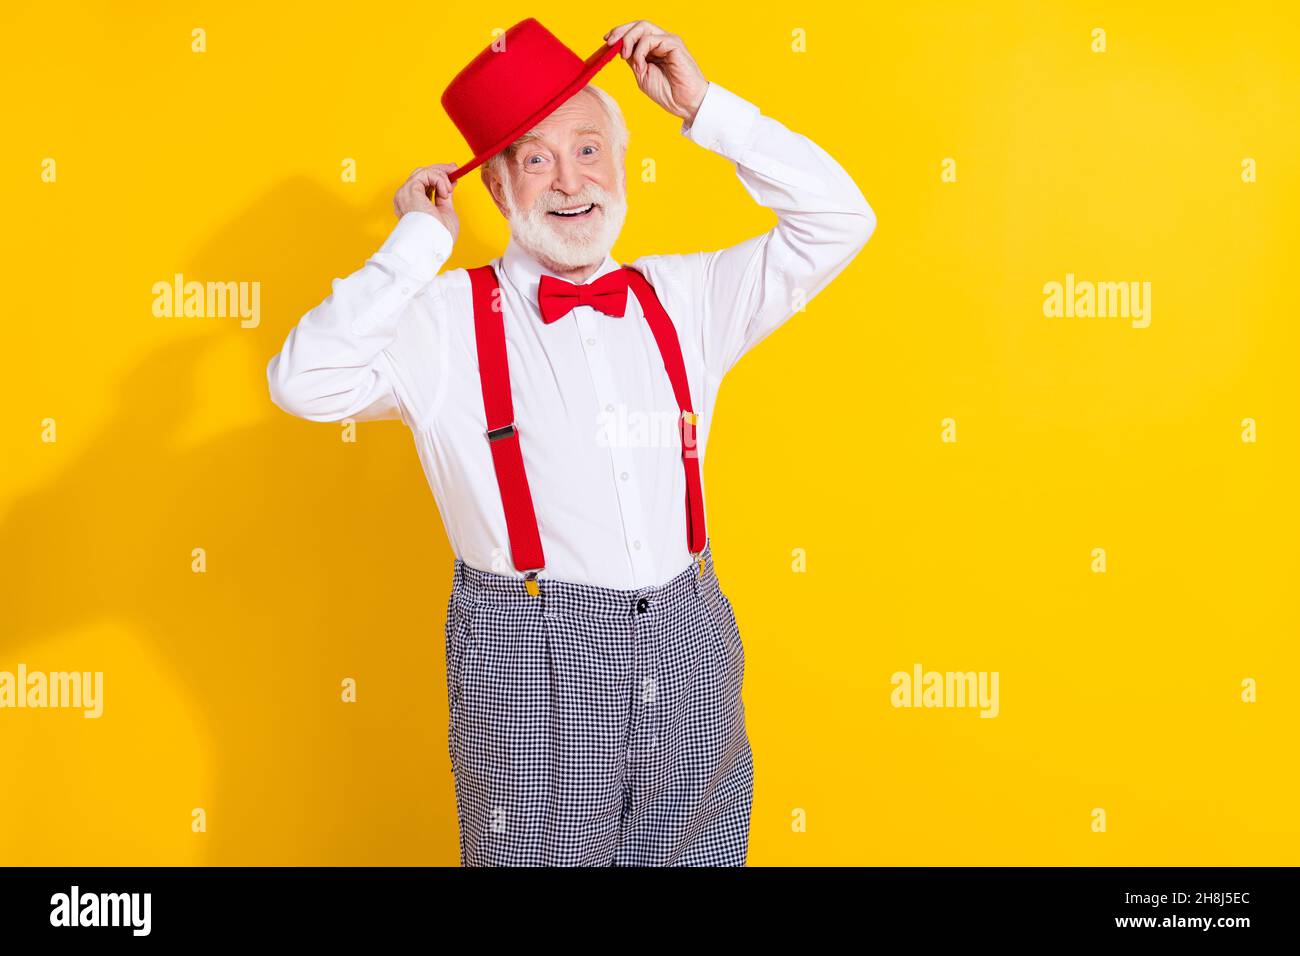 Foto von cool gealterten Mann versuchen neue Mütze tragen Krawatte Hemd Hosenträger karierte Hose auf gelbem Hintergrund isoliert Stockfoto